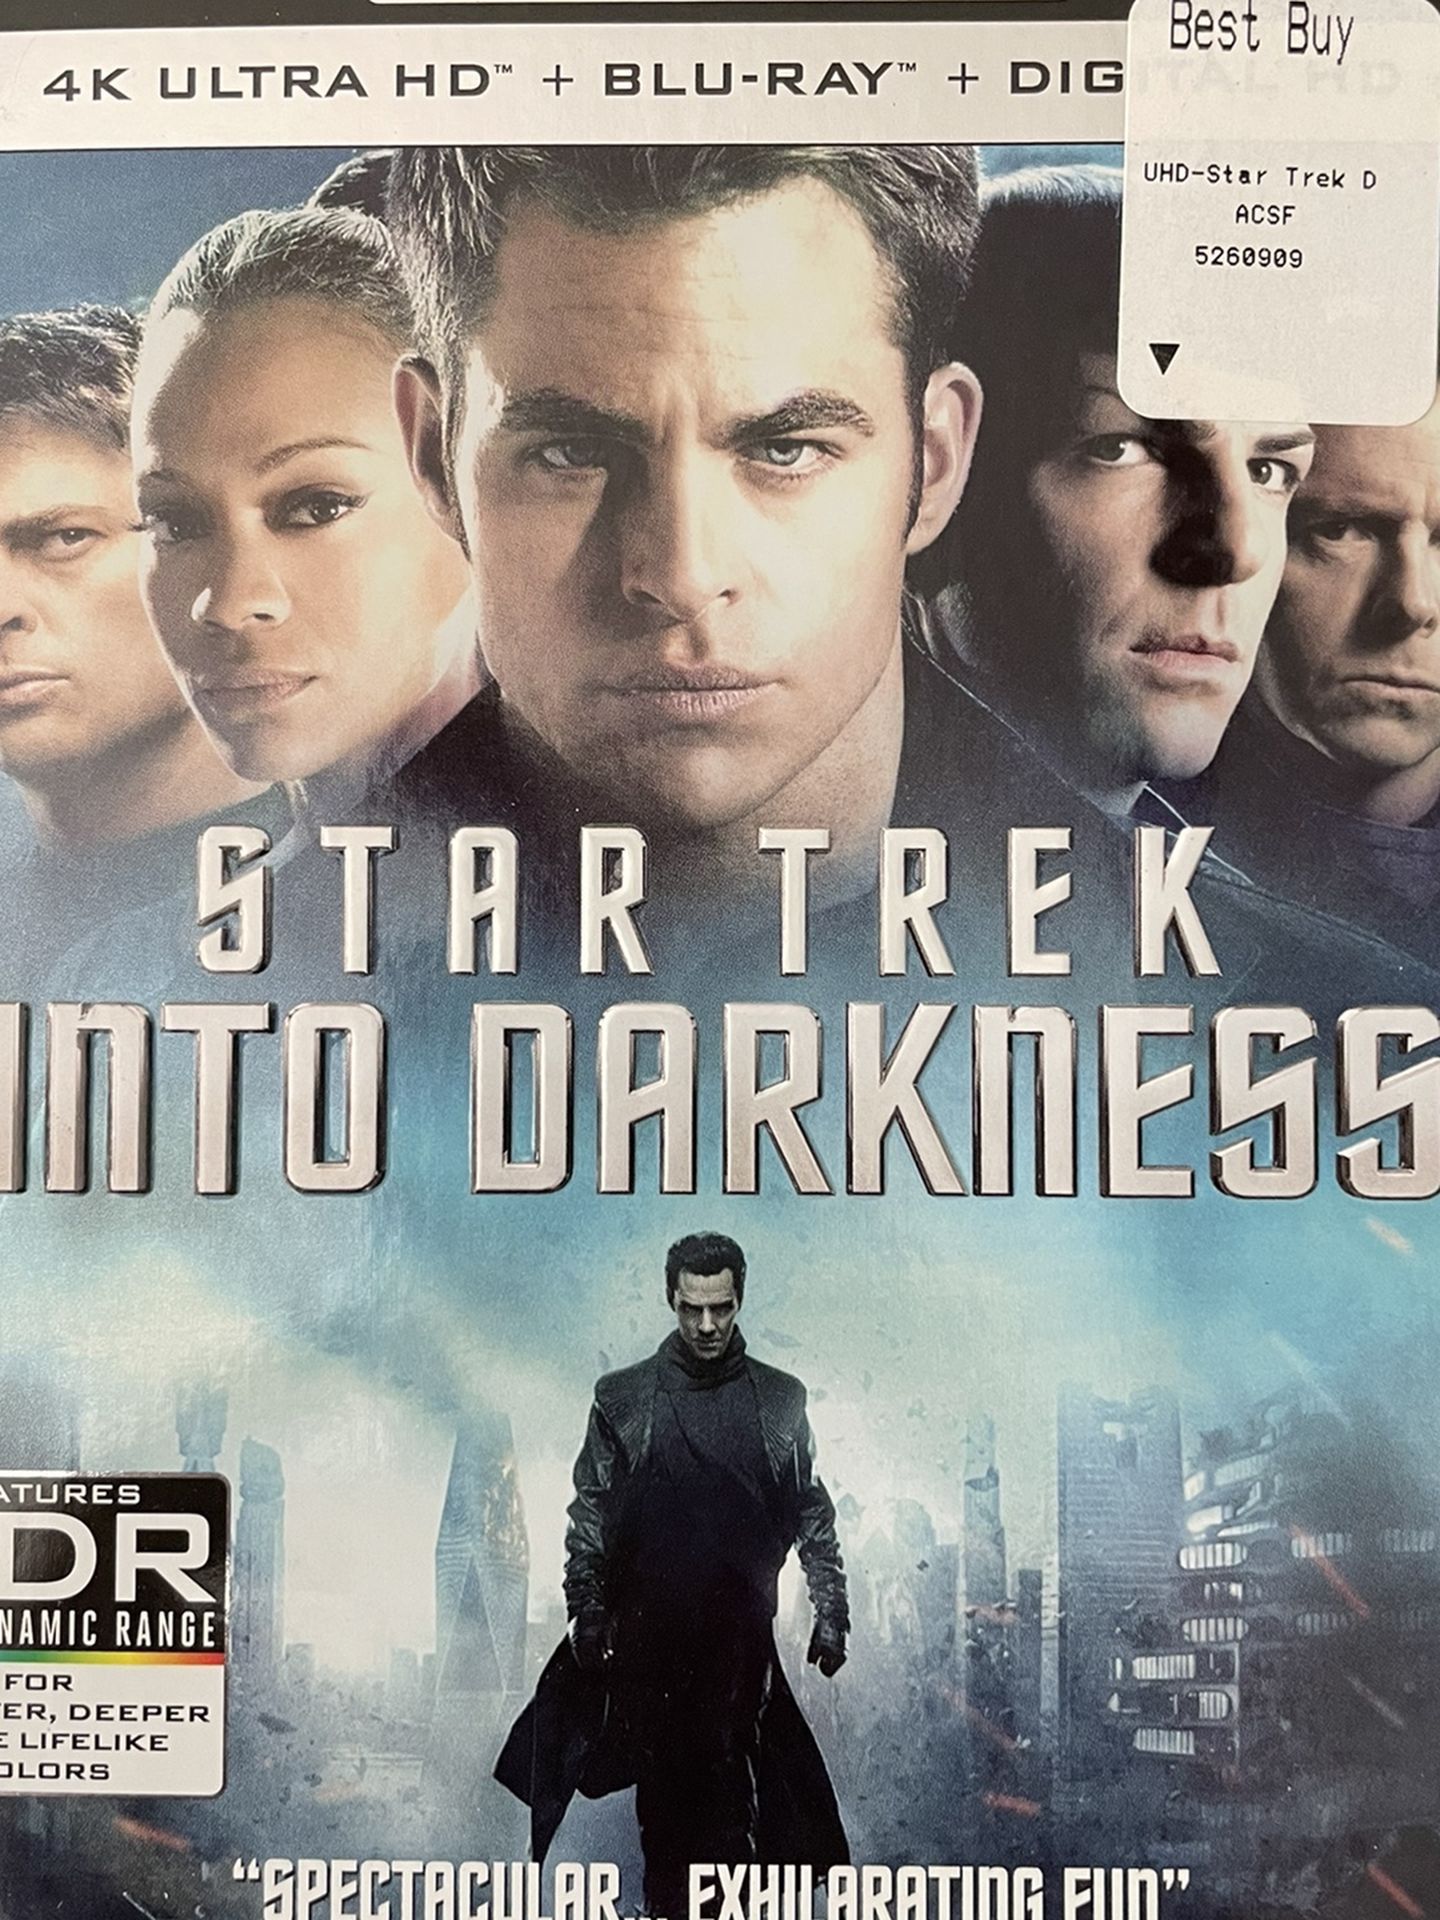 Star Trek Into Darkness - 4K Ultra HD + Blu-ray + Digital (2013)